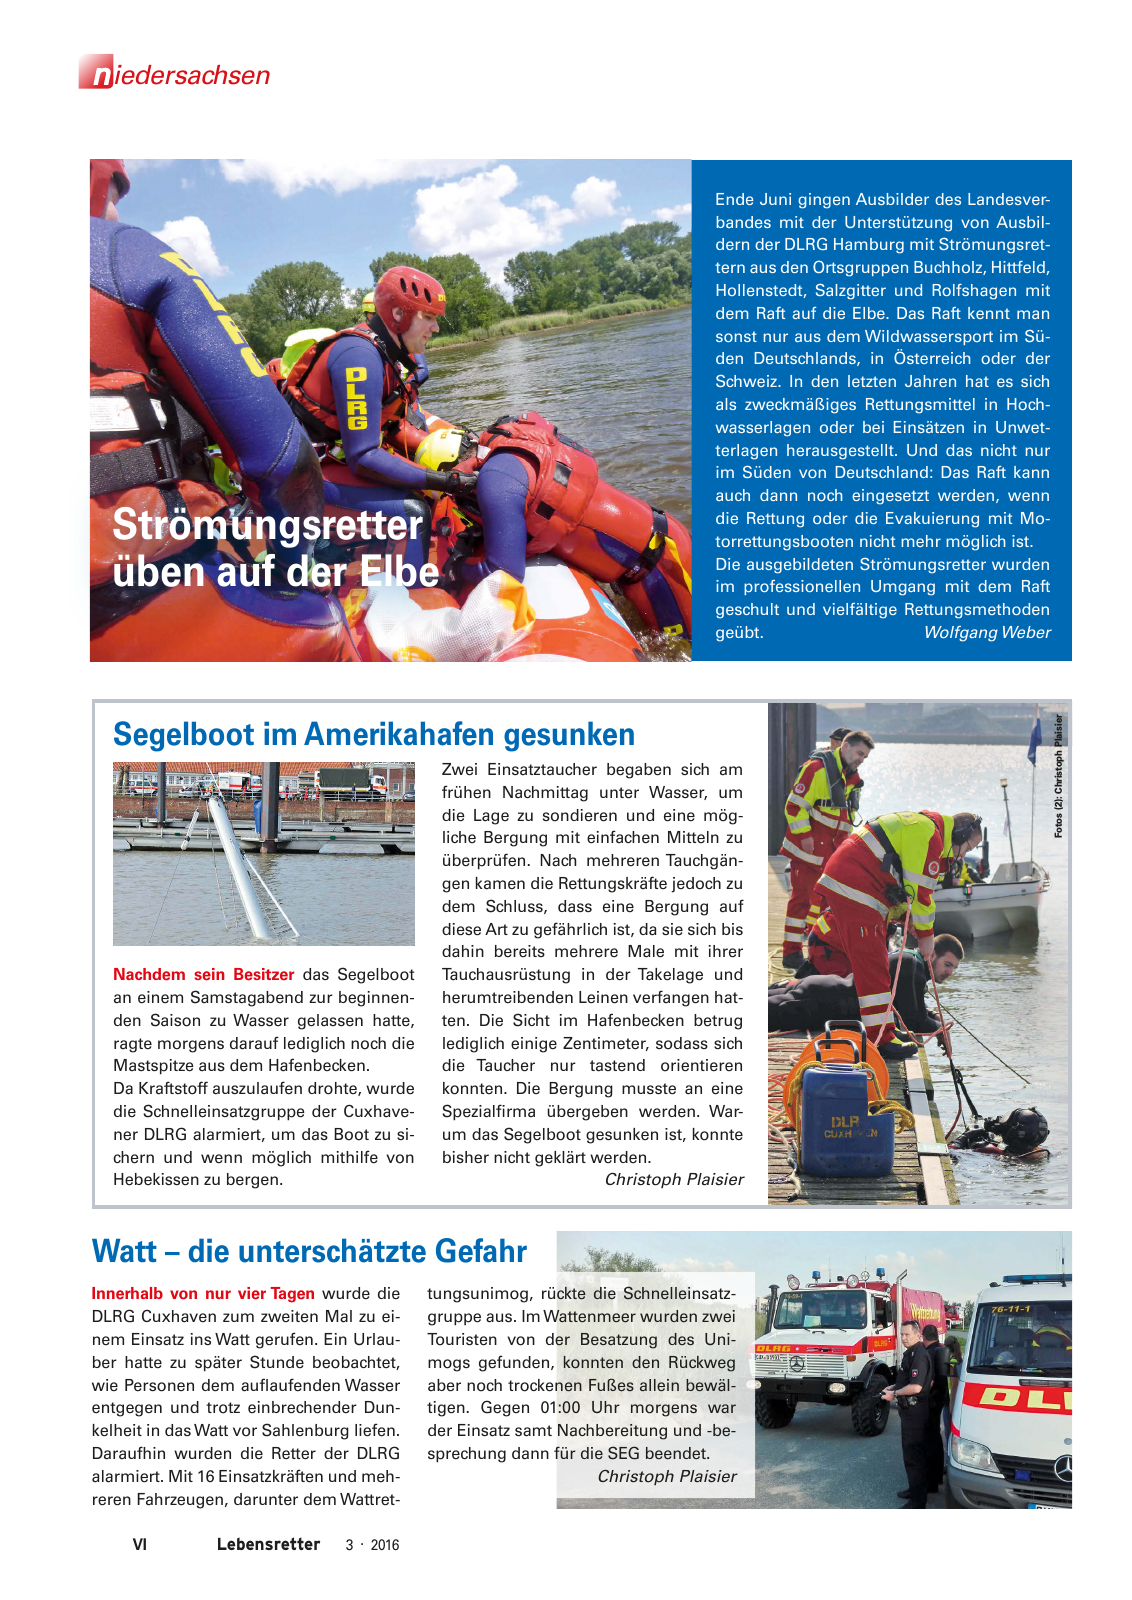 Vorschau Lebensretter 3/2016 - Regionalausgabe Niedersachsen Seite 8